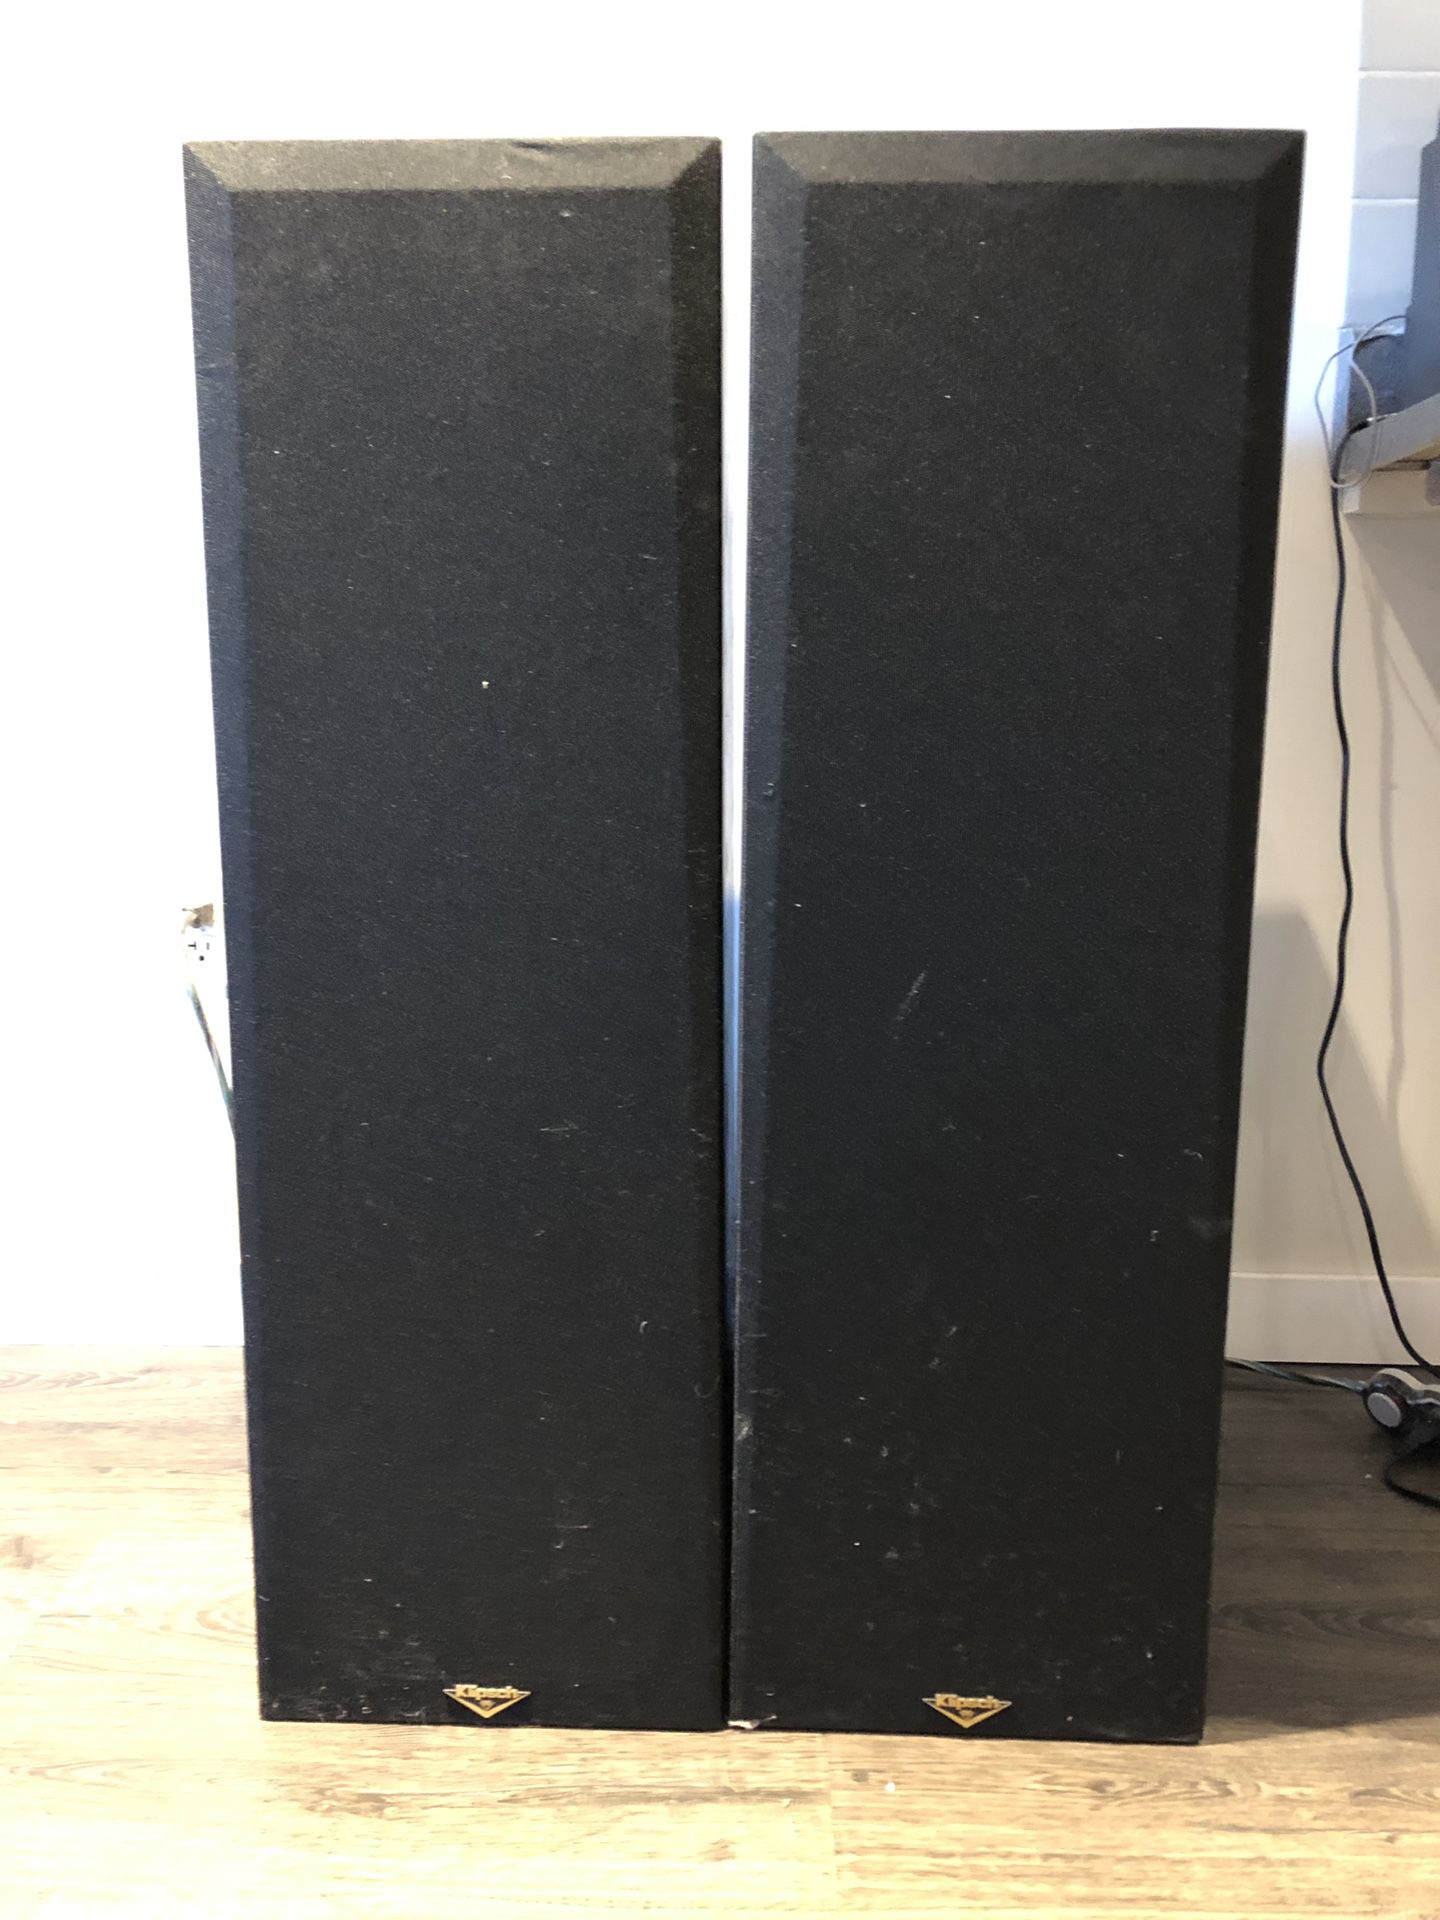 Klipsch KLF-10 loudspeakers has in great condition